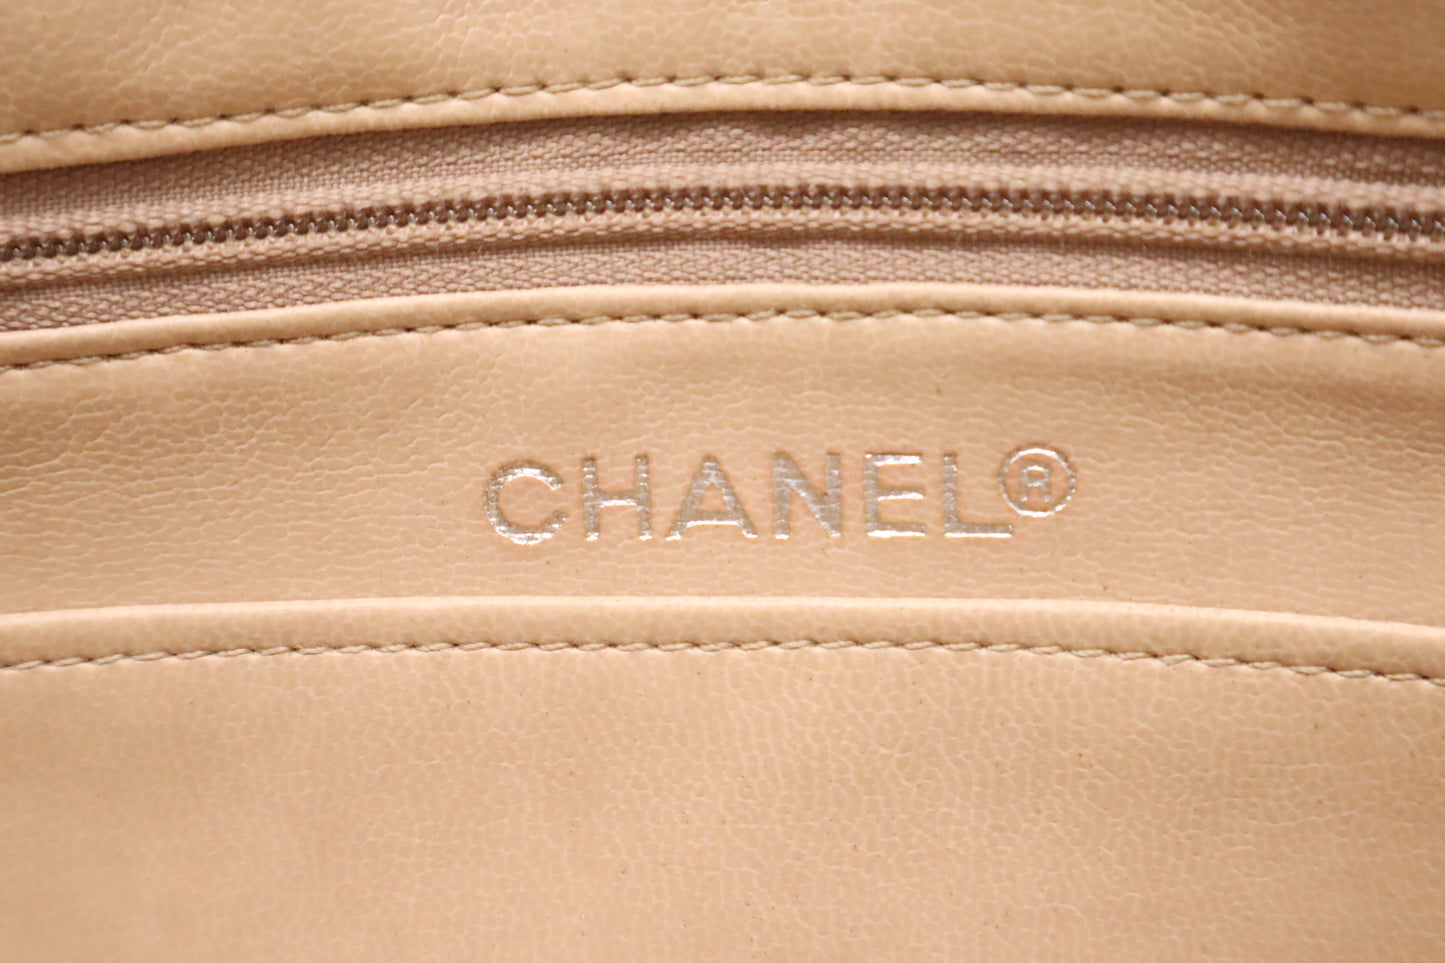 Chanel Shoulder Bag in Beige Leather